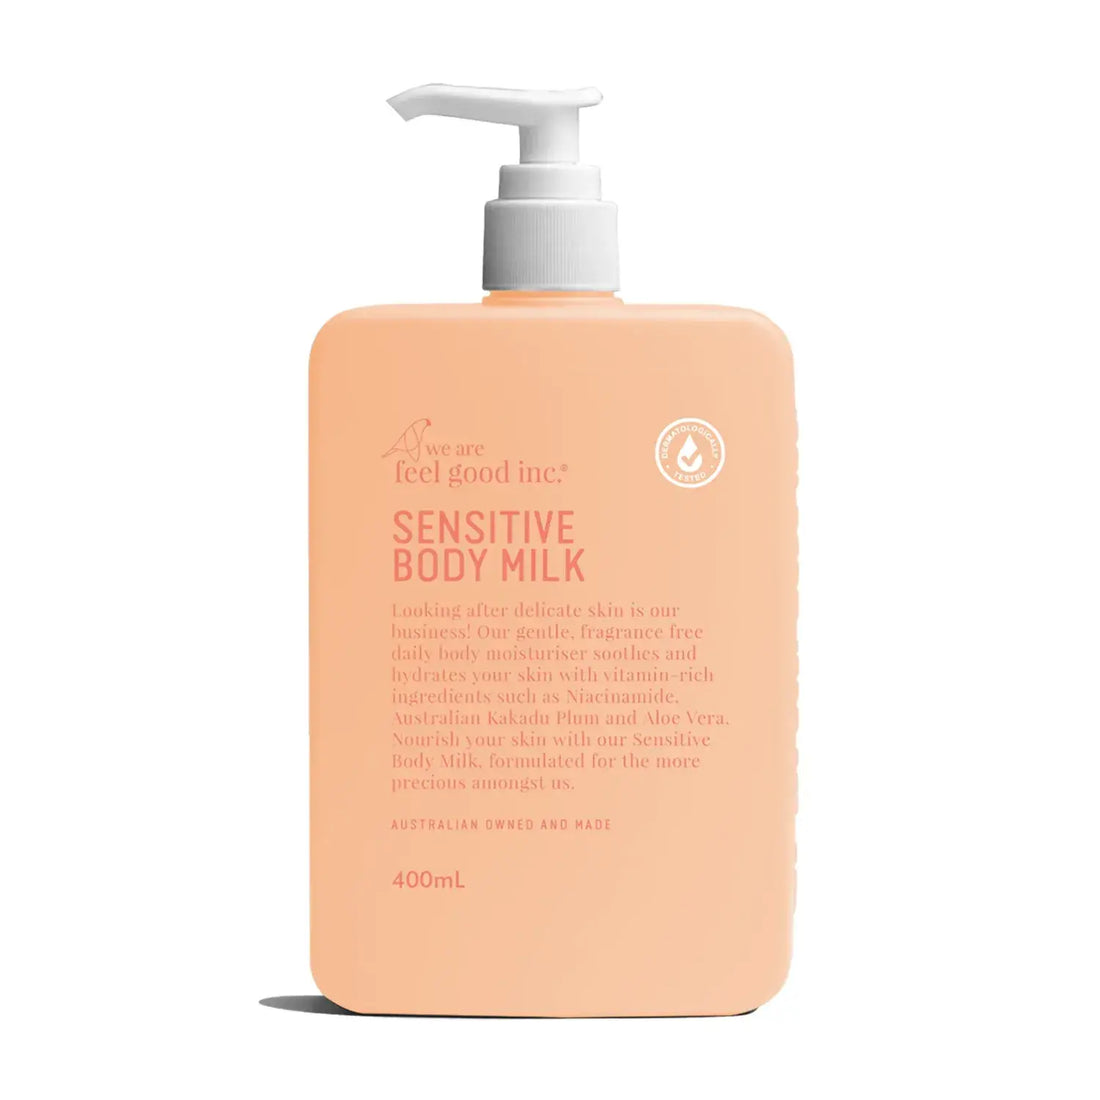 Moisturiser for Sensitive Skin - We are feel good inc - Australian made